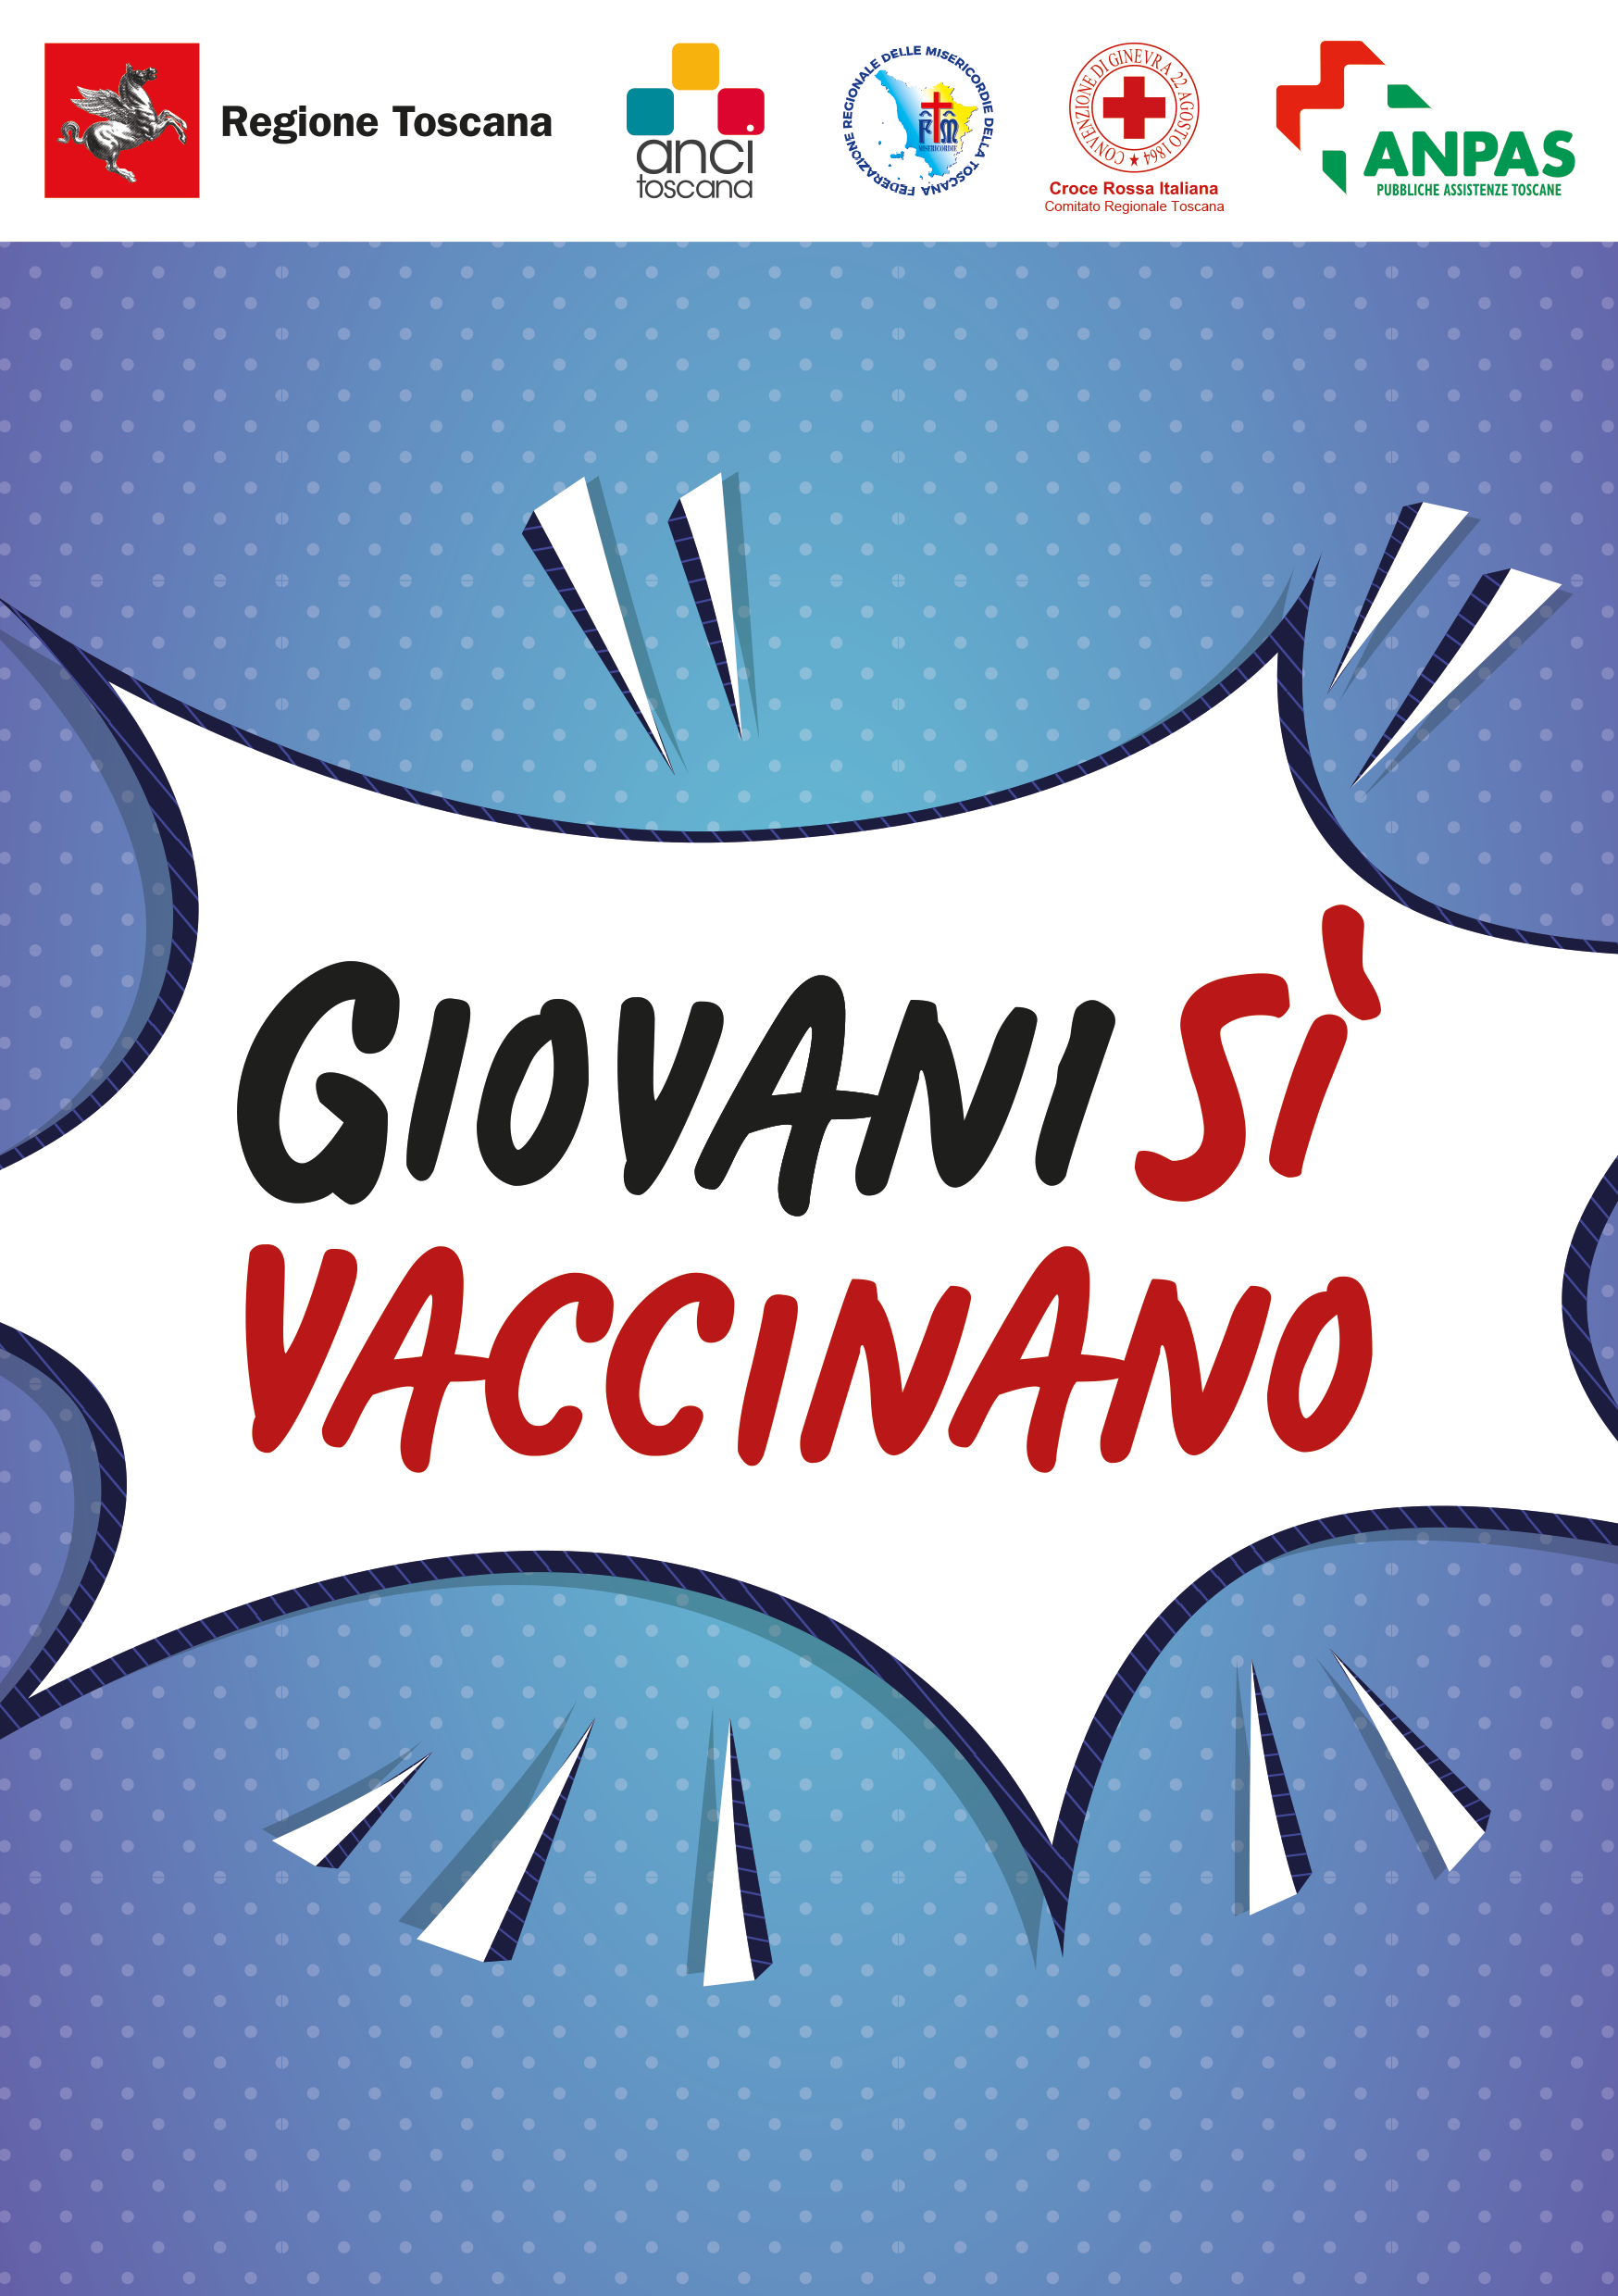 Vaccini, la Toscana tra i giovani:  nel fine settimana la campagna di sensibilizzazione